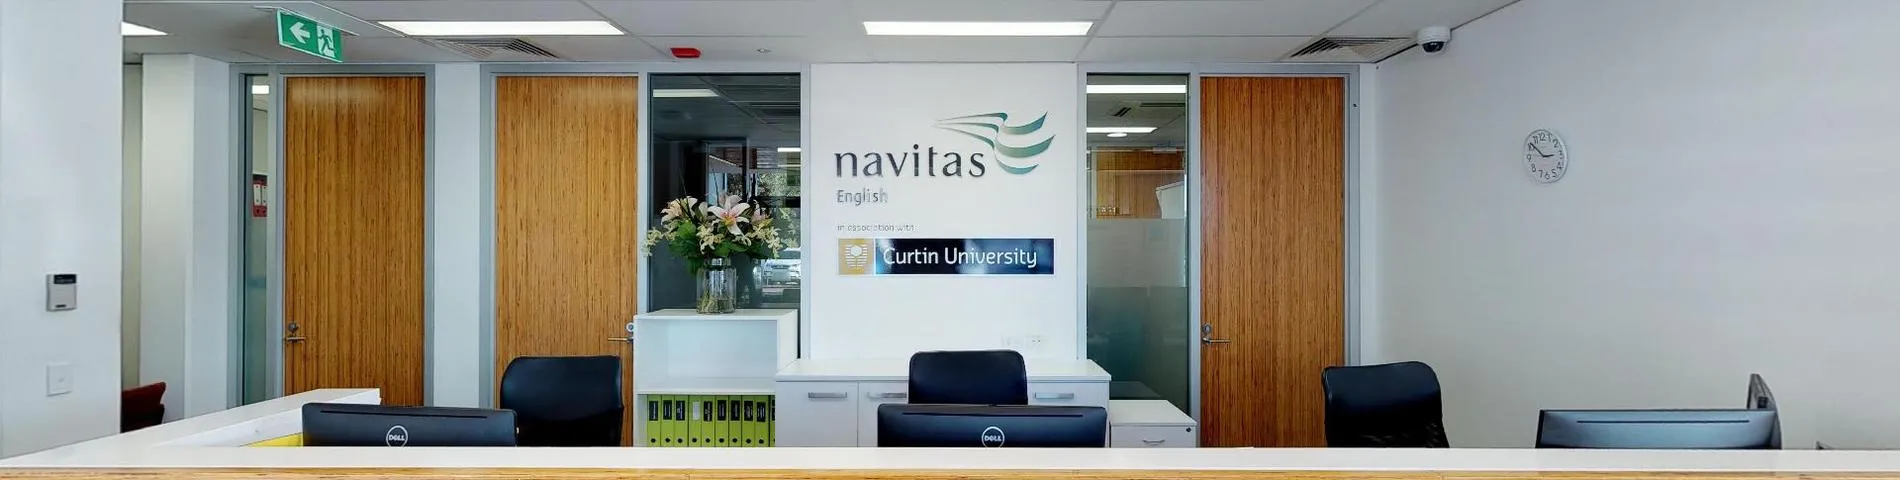 Navitas English图片1